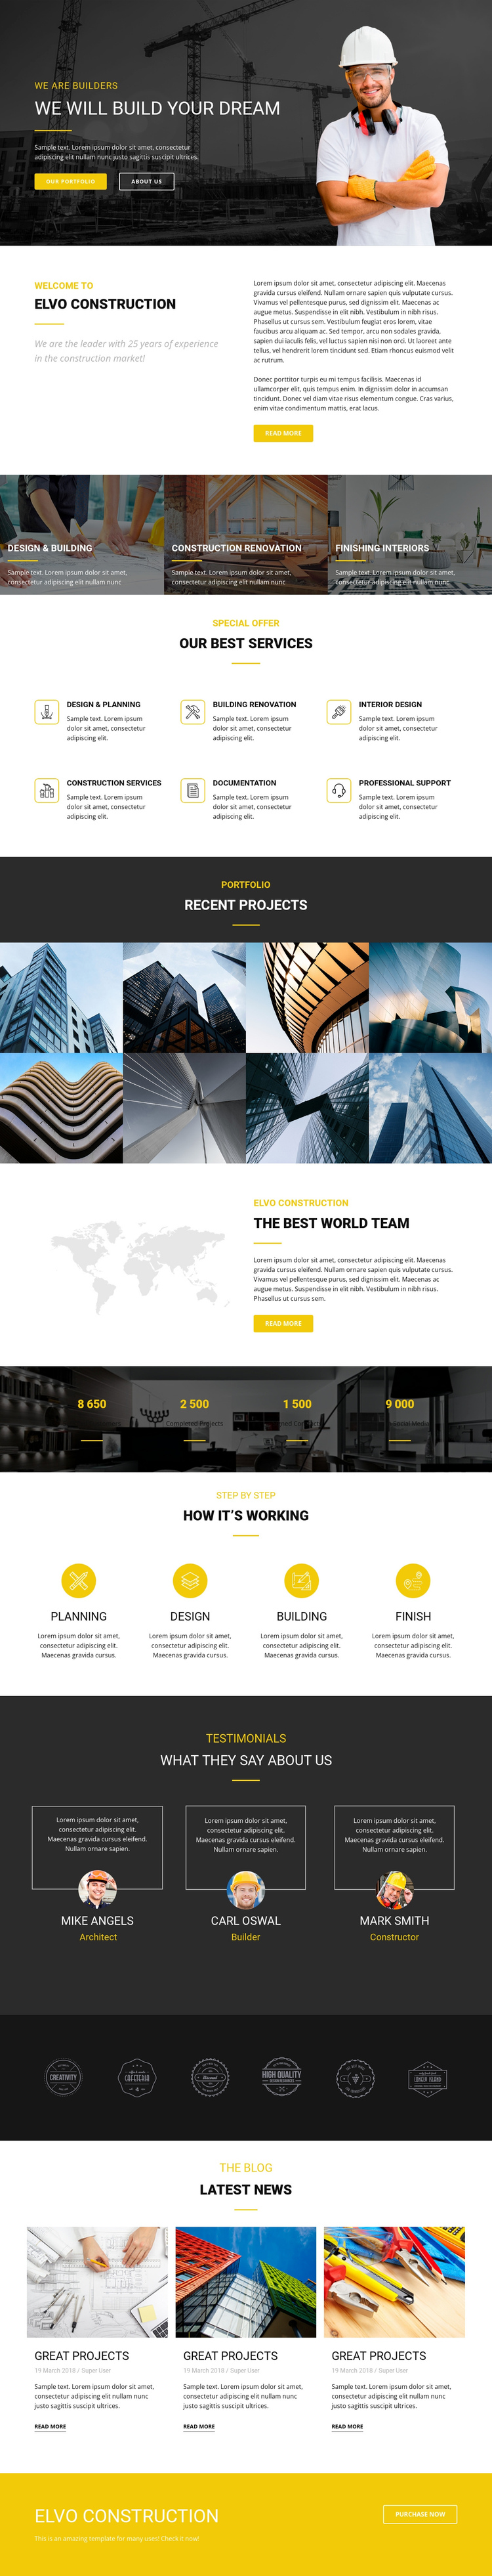 Build your dream industrial Website Builder Software